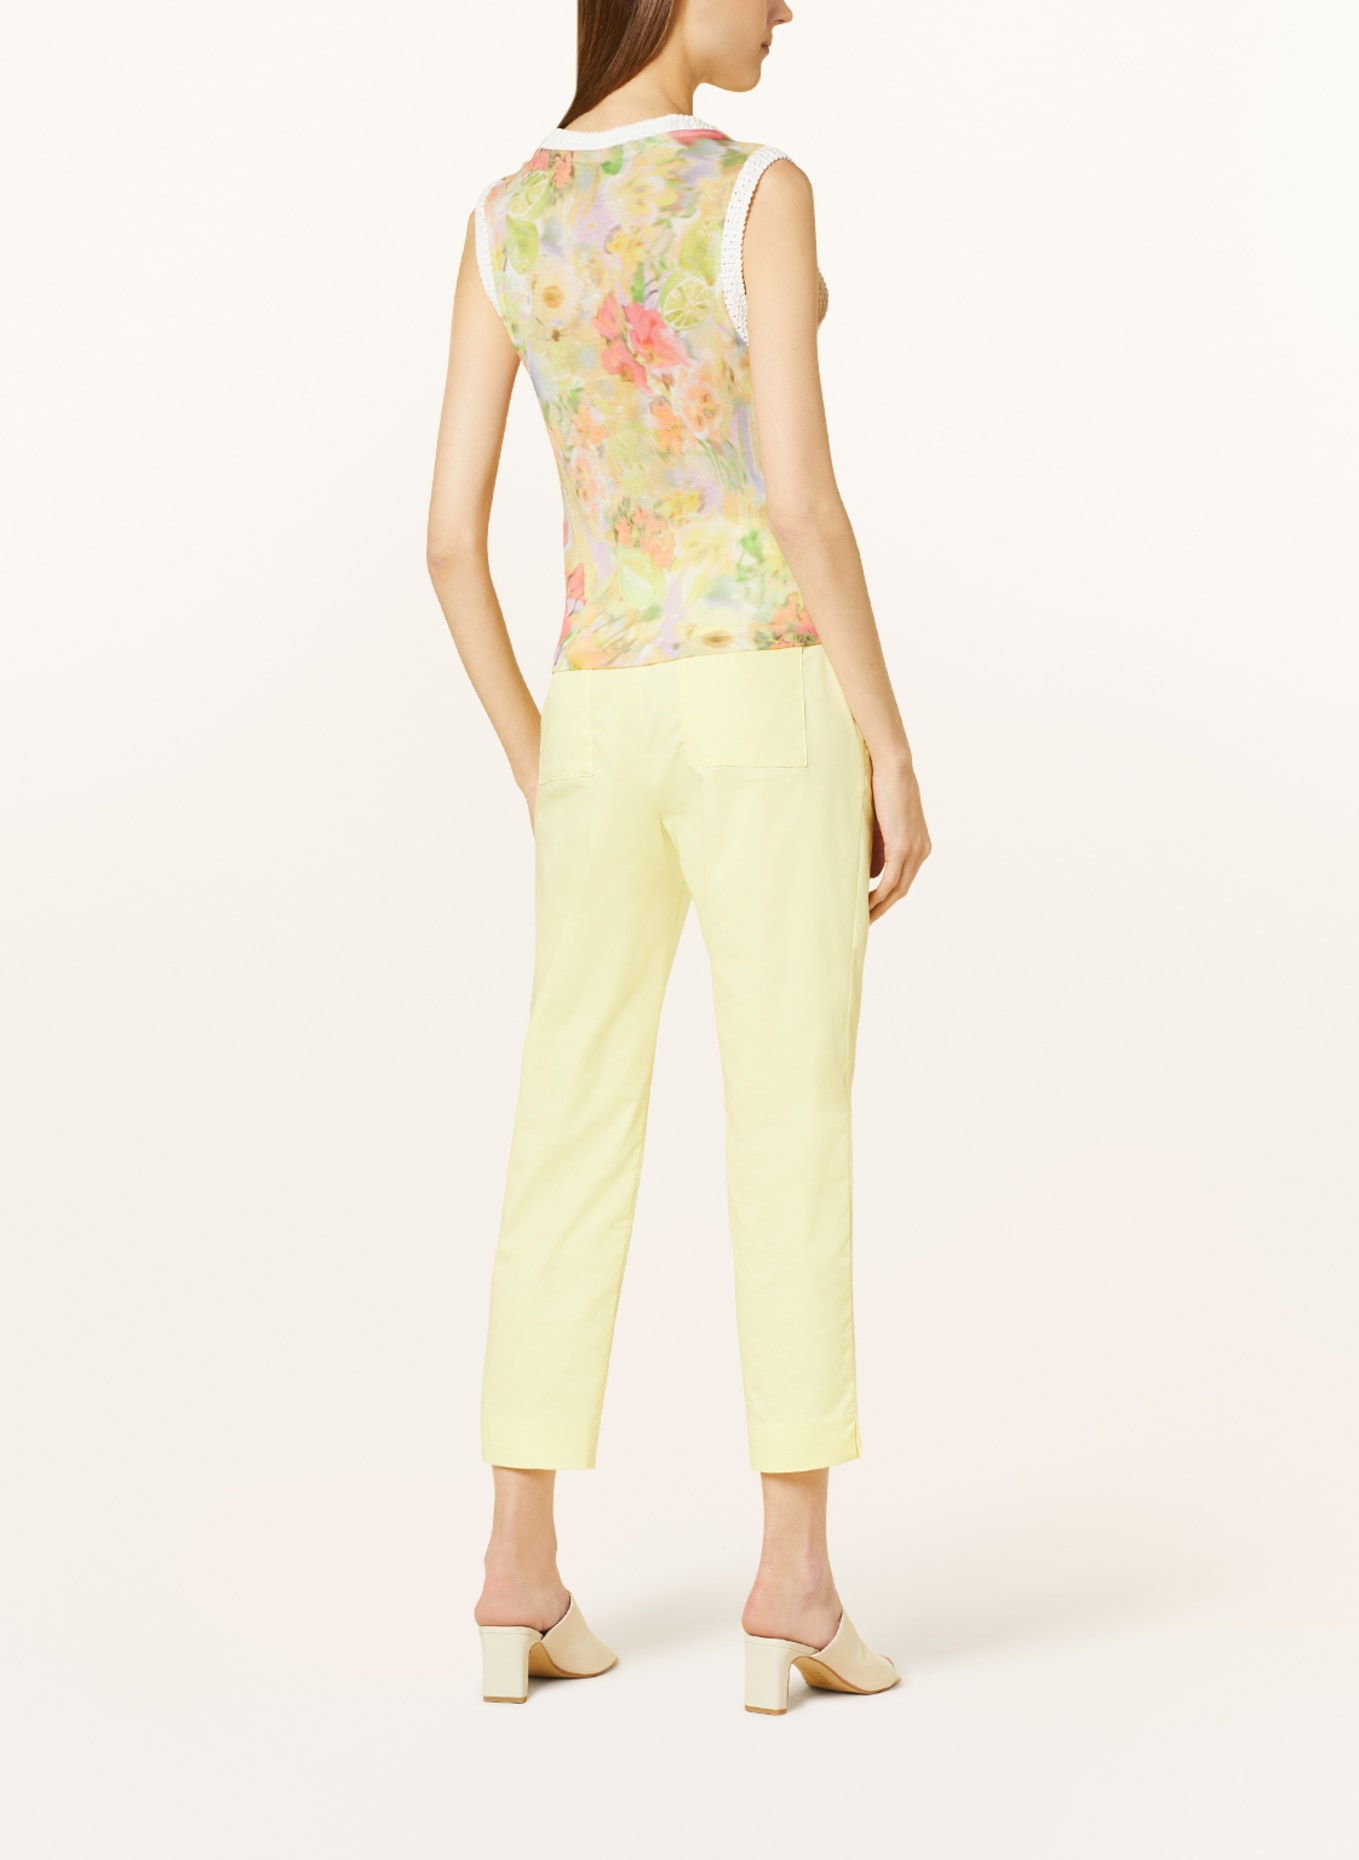 MARC CAIN Knit top, Color: 420 pale lemon (Image 3)